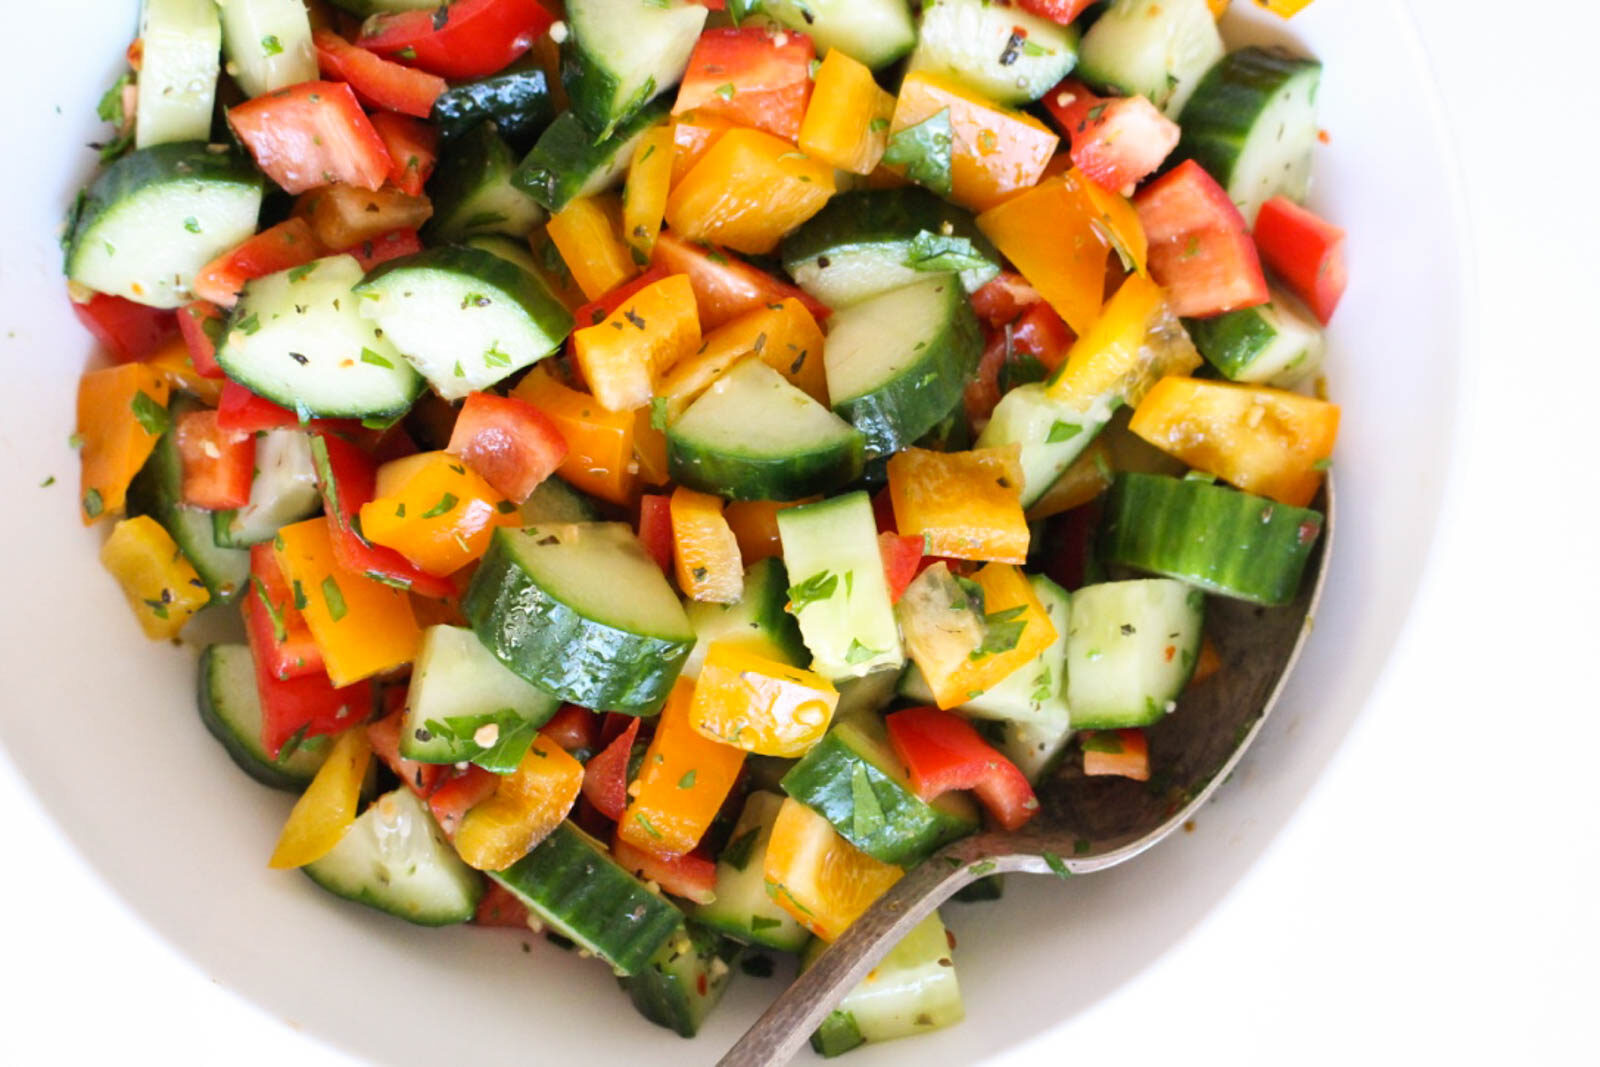 Salad dưa chuột là món ăn được nhiều người yêu thích, giúp giảm cân hiệu quả.